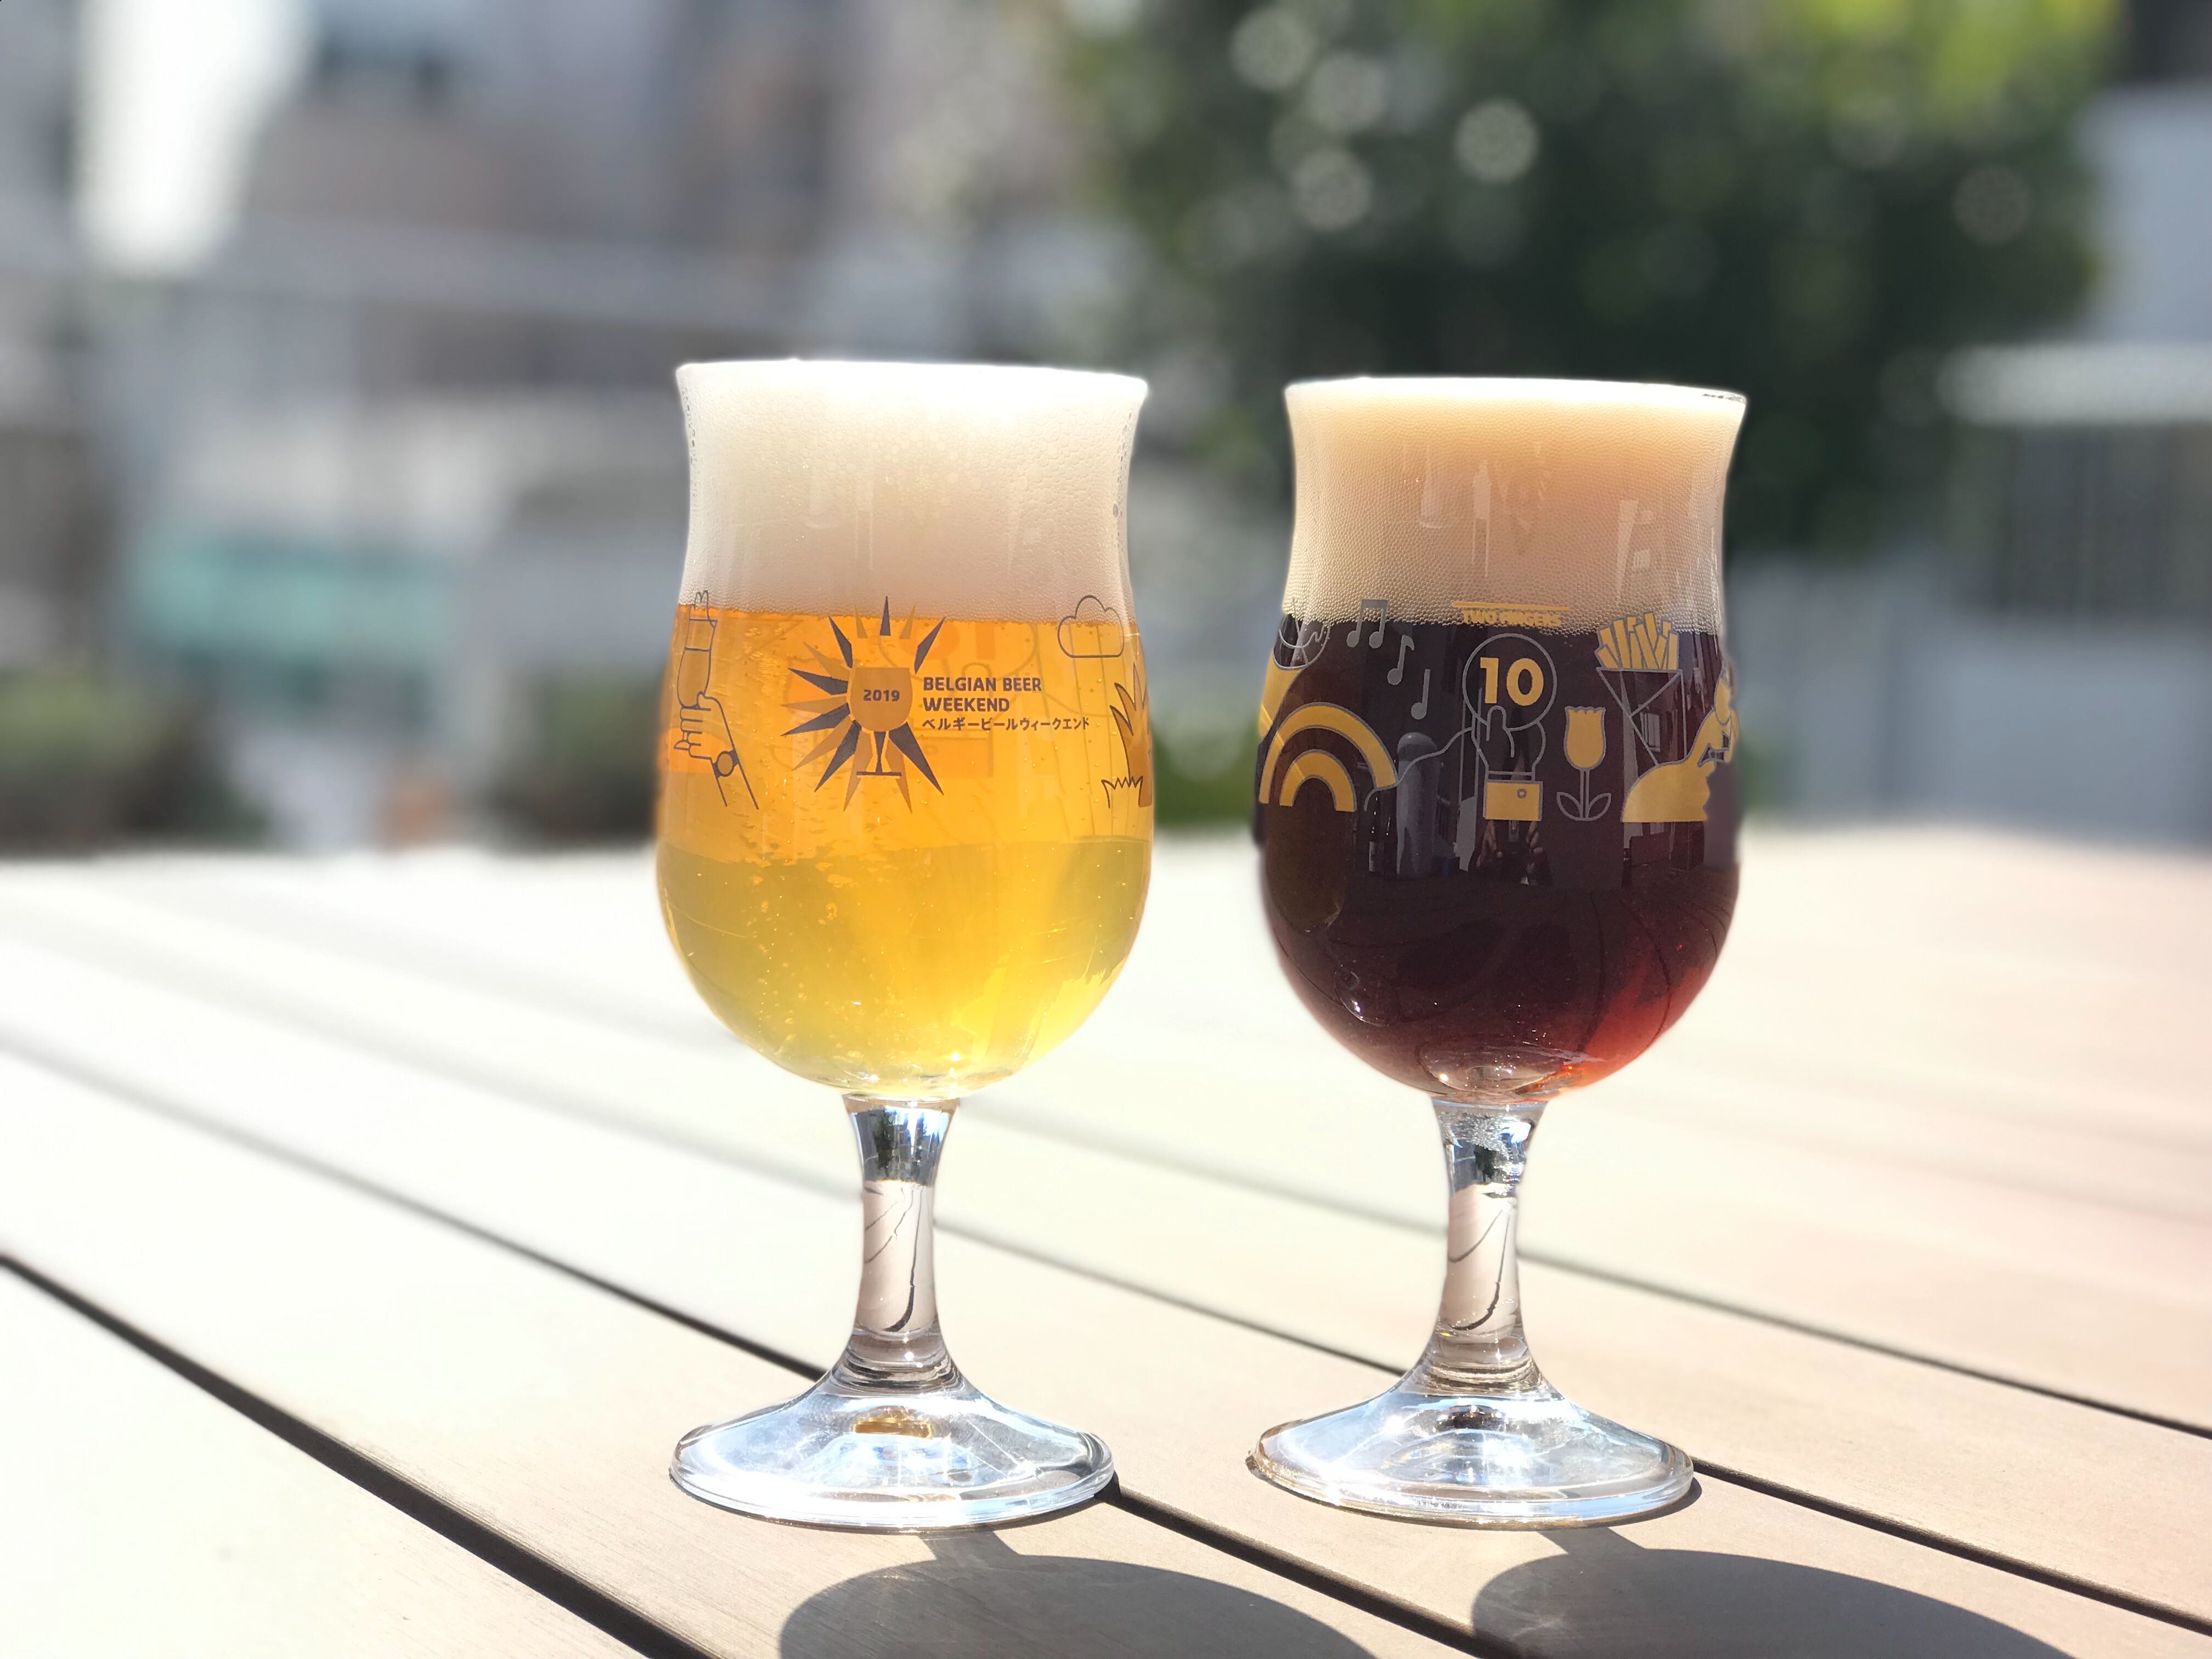 ベルギービールウィークエンド19 名古屋 105種類のベルギービールが登場 10年目を祝う Wow な企画も盛りだくさん Starbeer Productions株式会社のプレスリリース